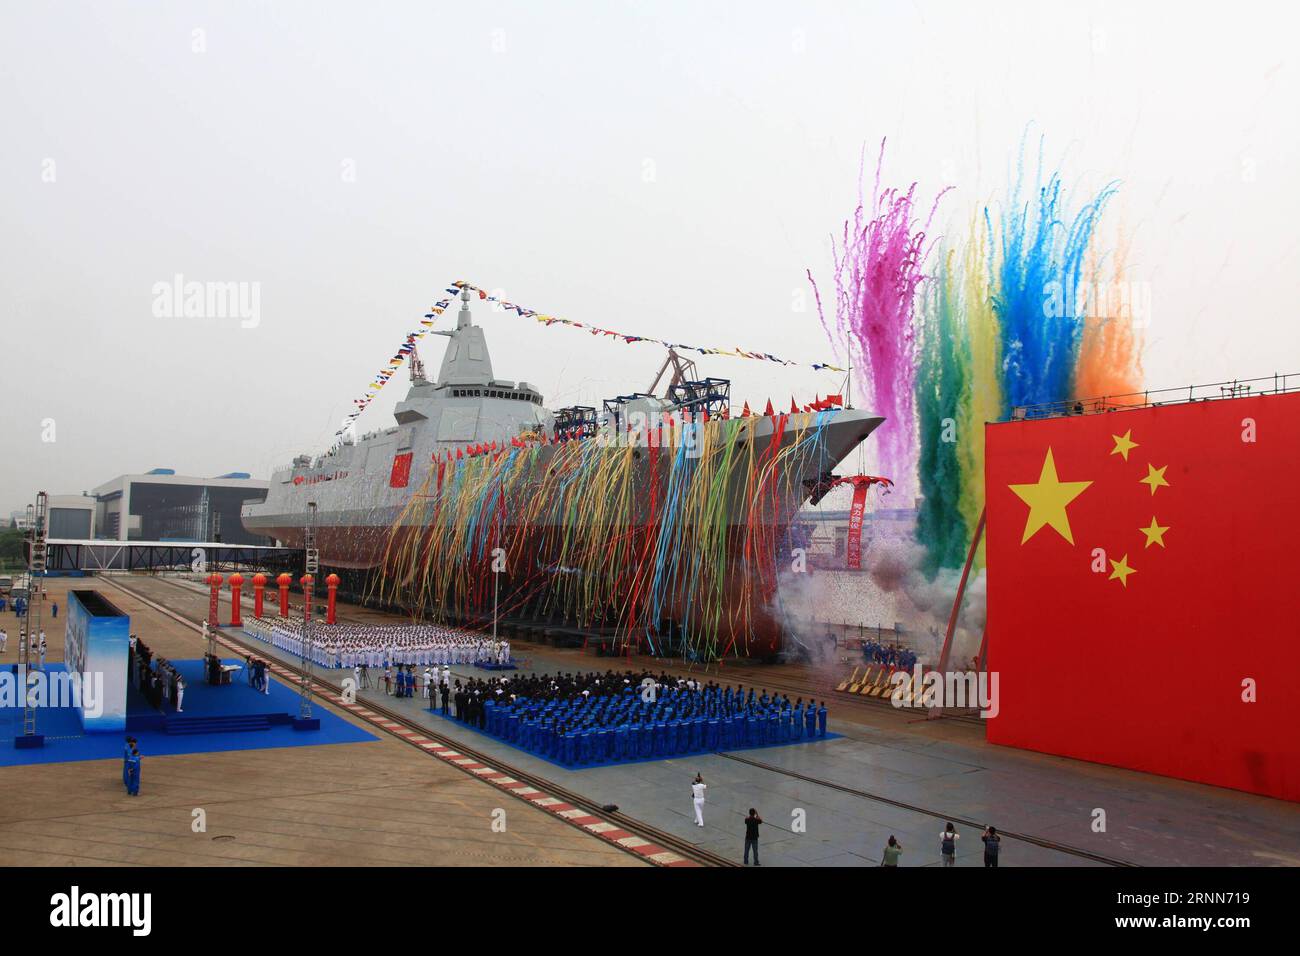 (170628) -- SHANGHAI, 28. Juni 2017 () -- der neue Zerstörer der chinesischen Marine, ein 000 Tonnen schweres, im Inland entwickeltes und produziertes Schiff, wird am 28. Juni 2017 in der Jiangnan Shipyard (Gruppe) in der ostchinesischen Stadt Shanghai gestartet. Der Zerstörer ist der erste der neuen Generation von Zerstörern in China. Es ist mit neuen Luftverteidigungs-, Raketen-, Schiffs- und U-Boot-Waffen ausgestattet. Das Schiff ist ein Meilenstein bei der Verbesserung des nationalen Verteidigungssystems der Marine und dem Aufbau einer starken und modernen Marine. (/Wang Donghai)(wjq) INSIGHT CHINA-SHANGHAI-NAVY-NEW DESTROYER-LAUNCH (CN) Xinhua PUBLICATIONxNOTxINxCH Stockfoto